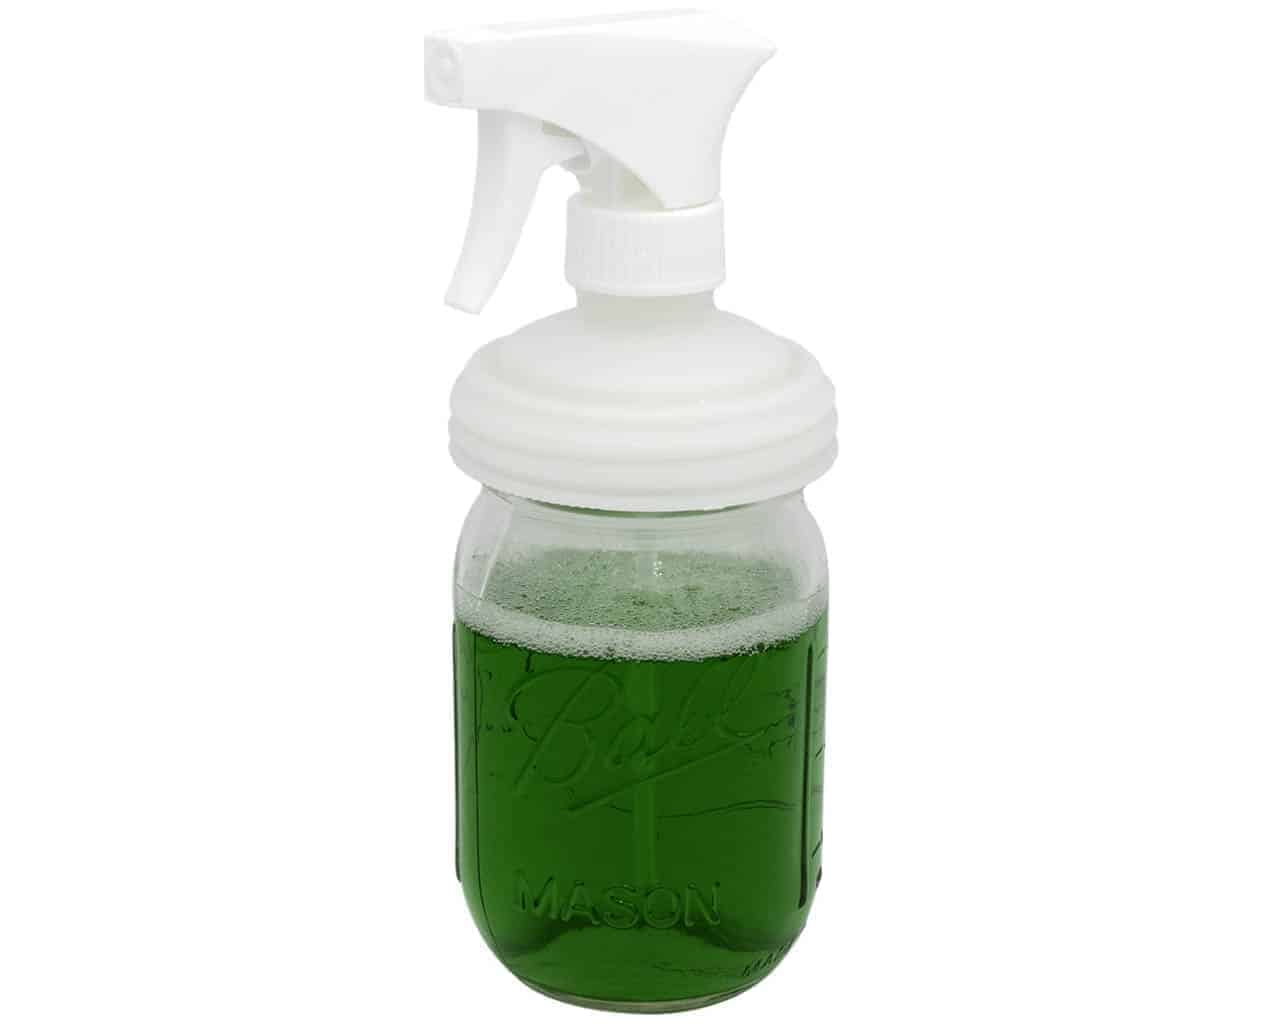 http://masonjarlifestyle.com/cdn/shop/files/adapta-cap-trigger-sprayer-regular-mouth-mason-jars-simple-green.jpg?v=1695765536